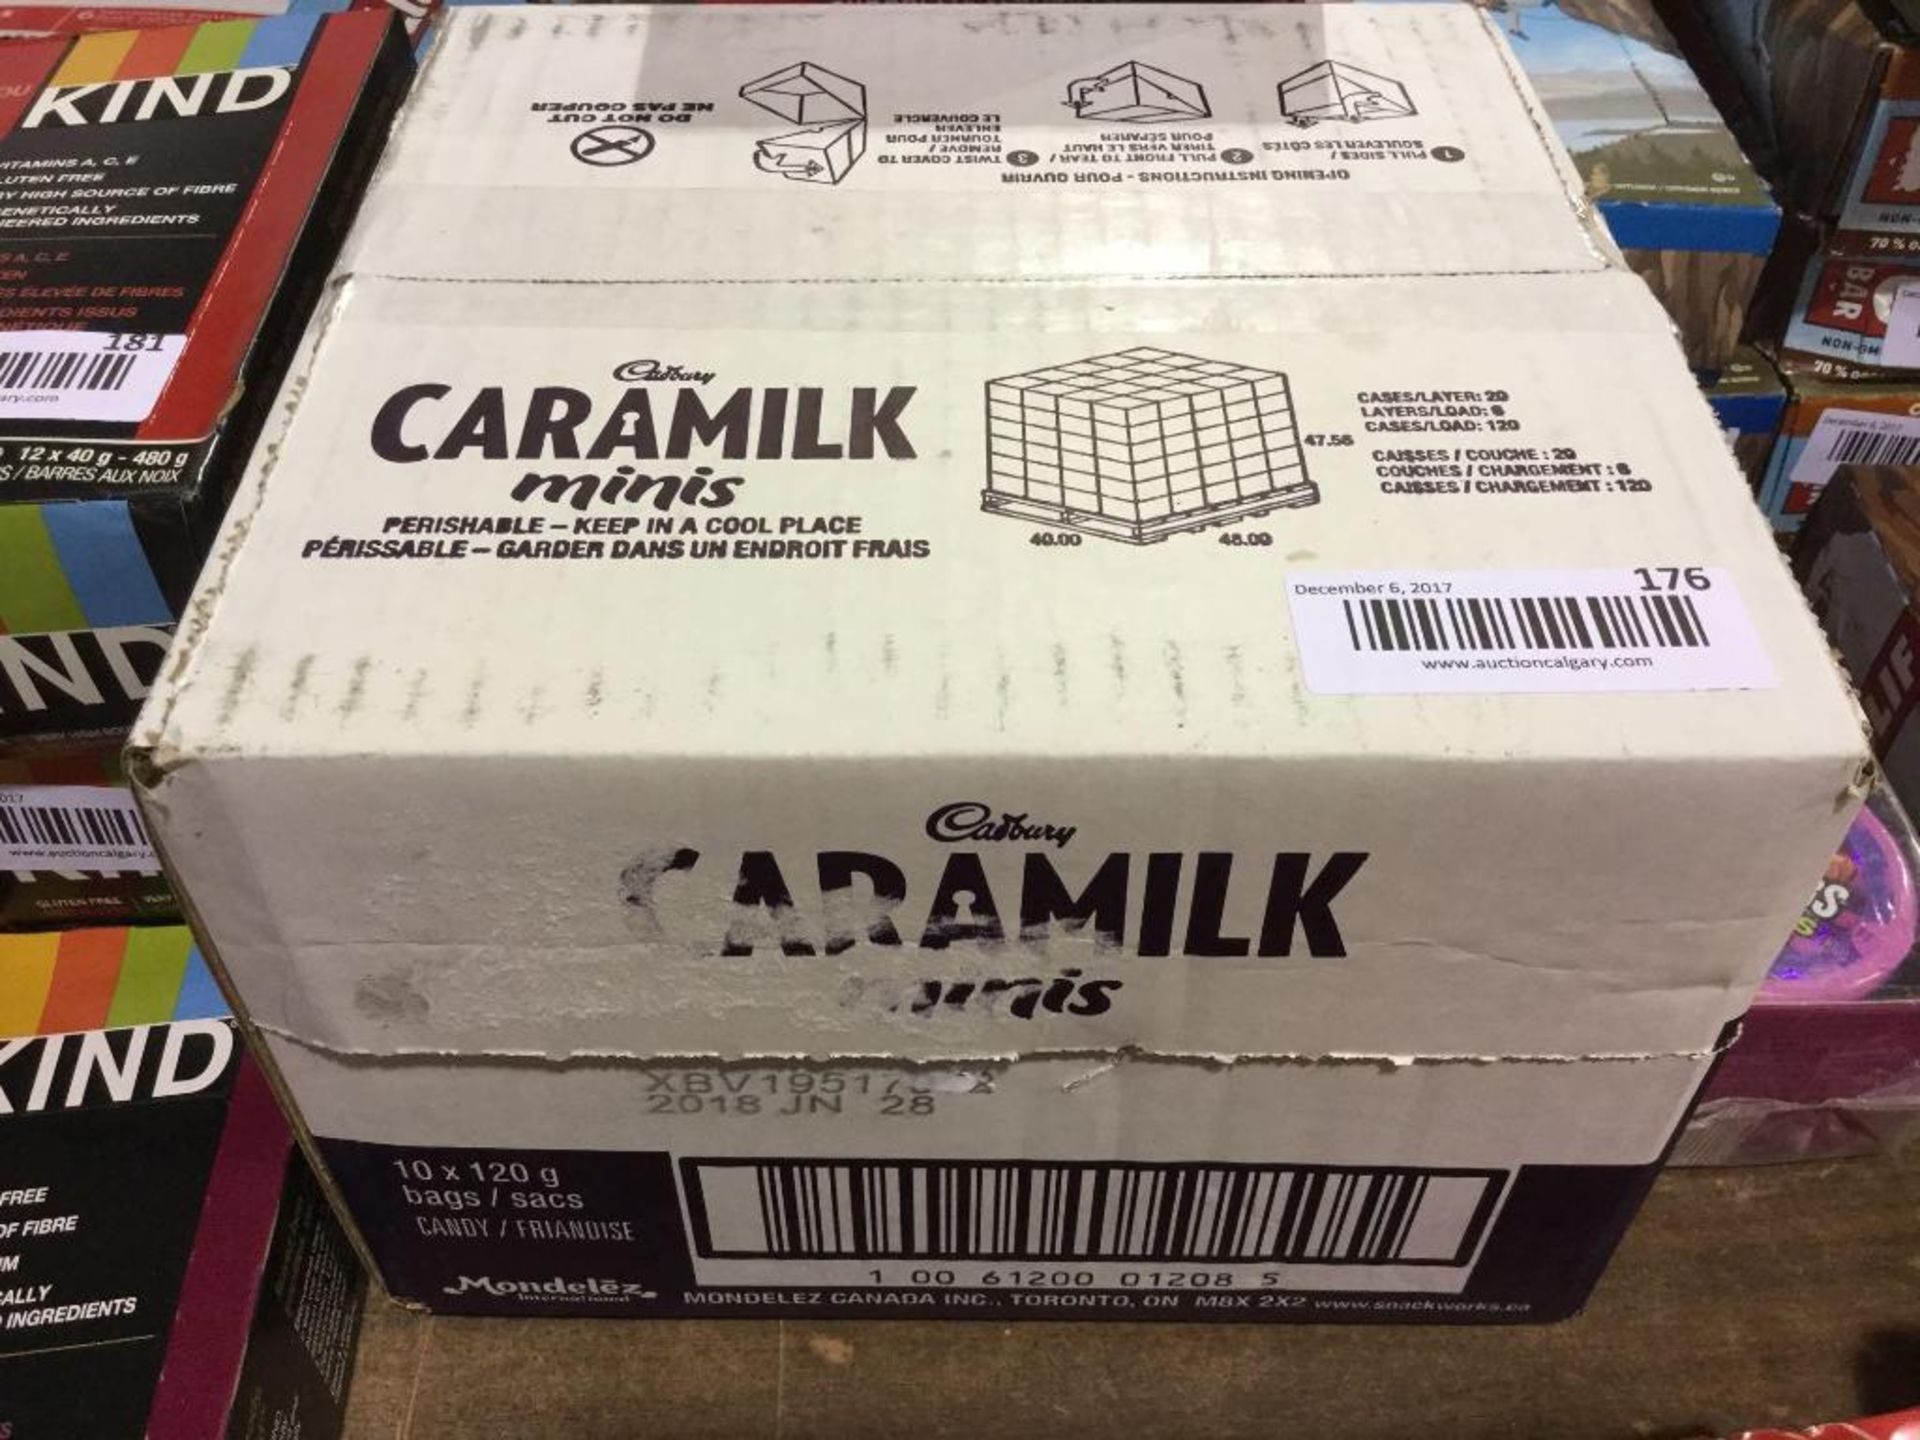 Case of 10 x 120 g Bags Cadbury Caramilk Minis